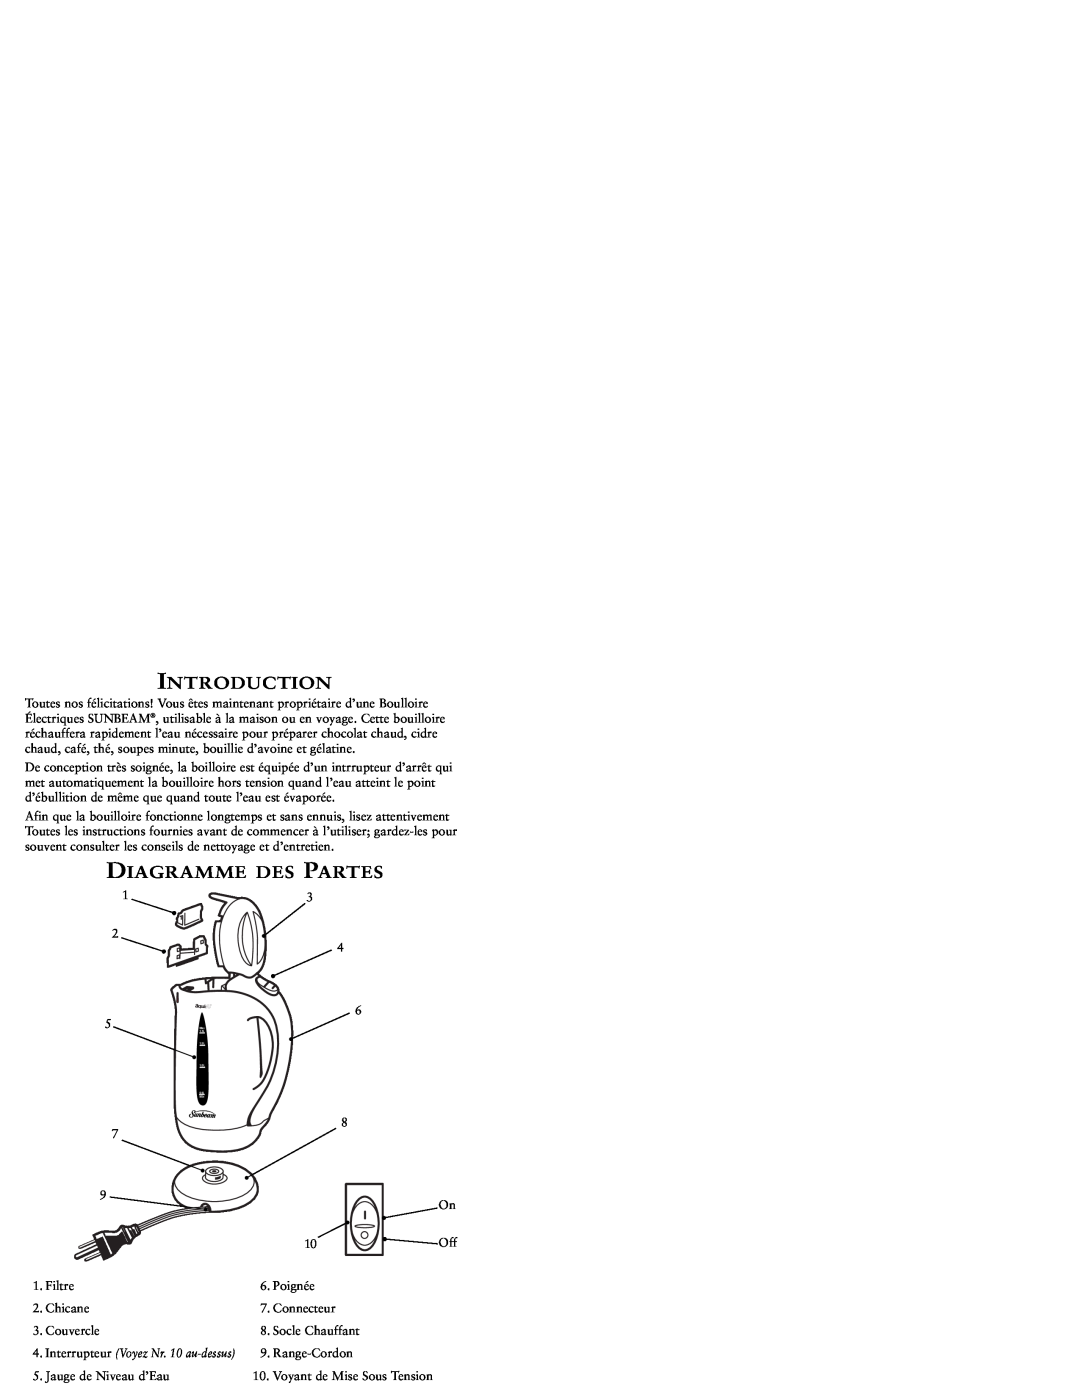 Sunbeam KJX17CL user manual Diagramme Des Partes, Introduction, Filtre 